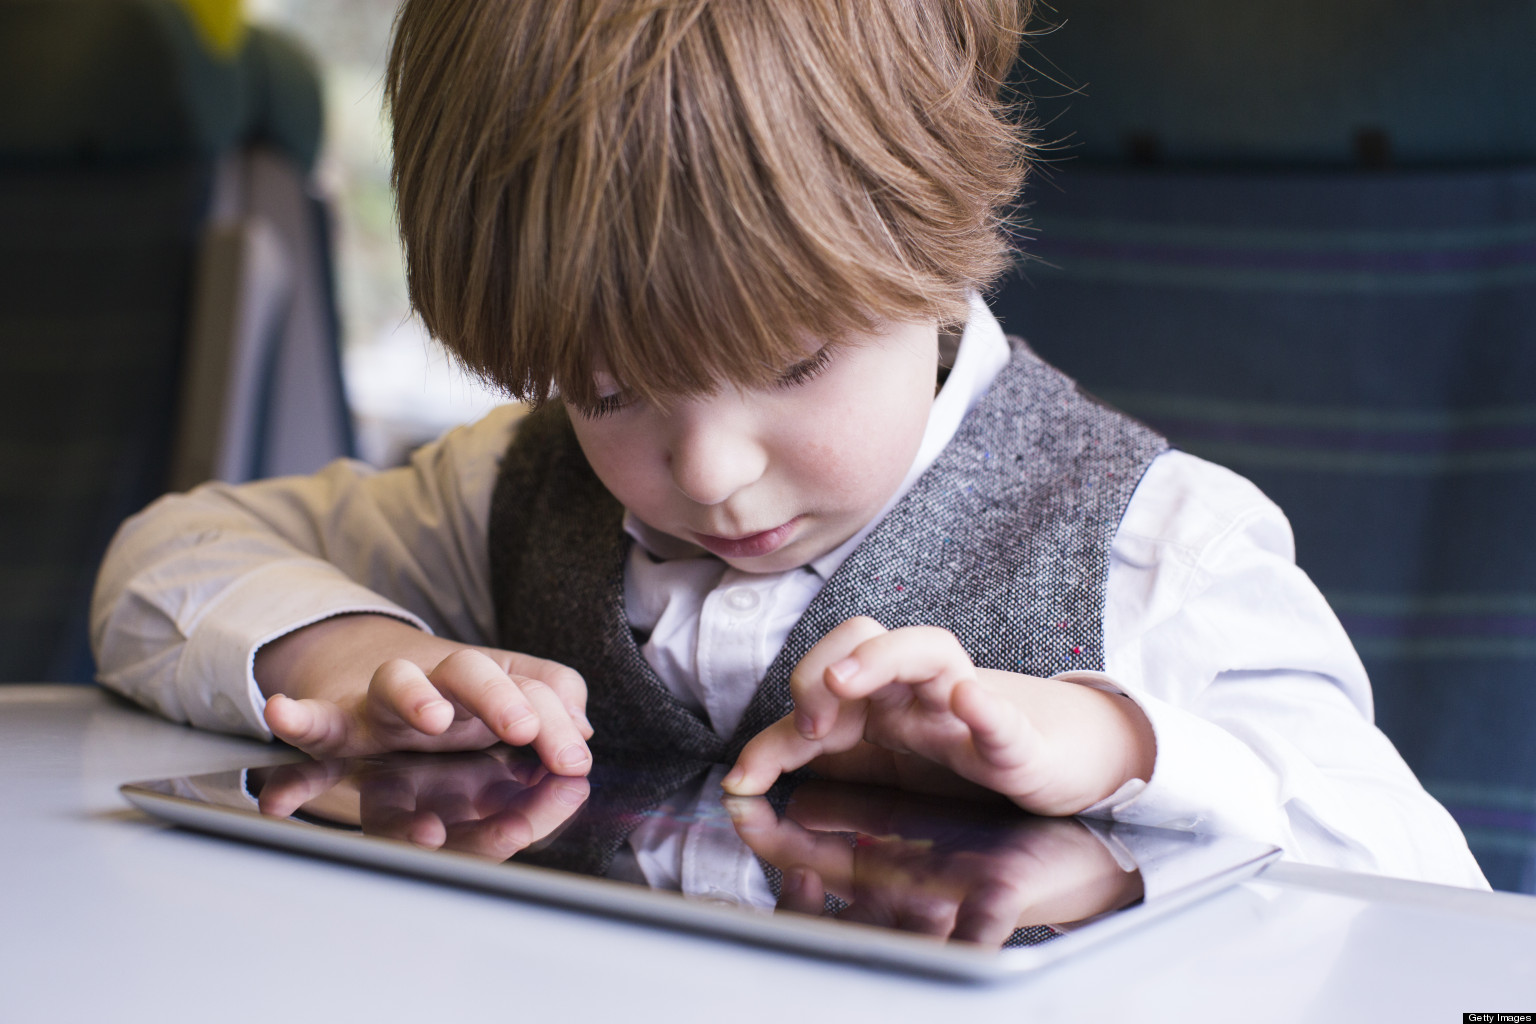 Directivos de compañías tecnológicas limitan a sus hijos el uso de equipos electrónicos